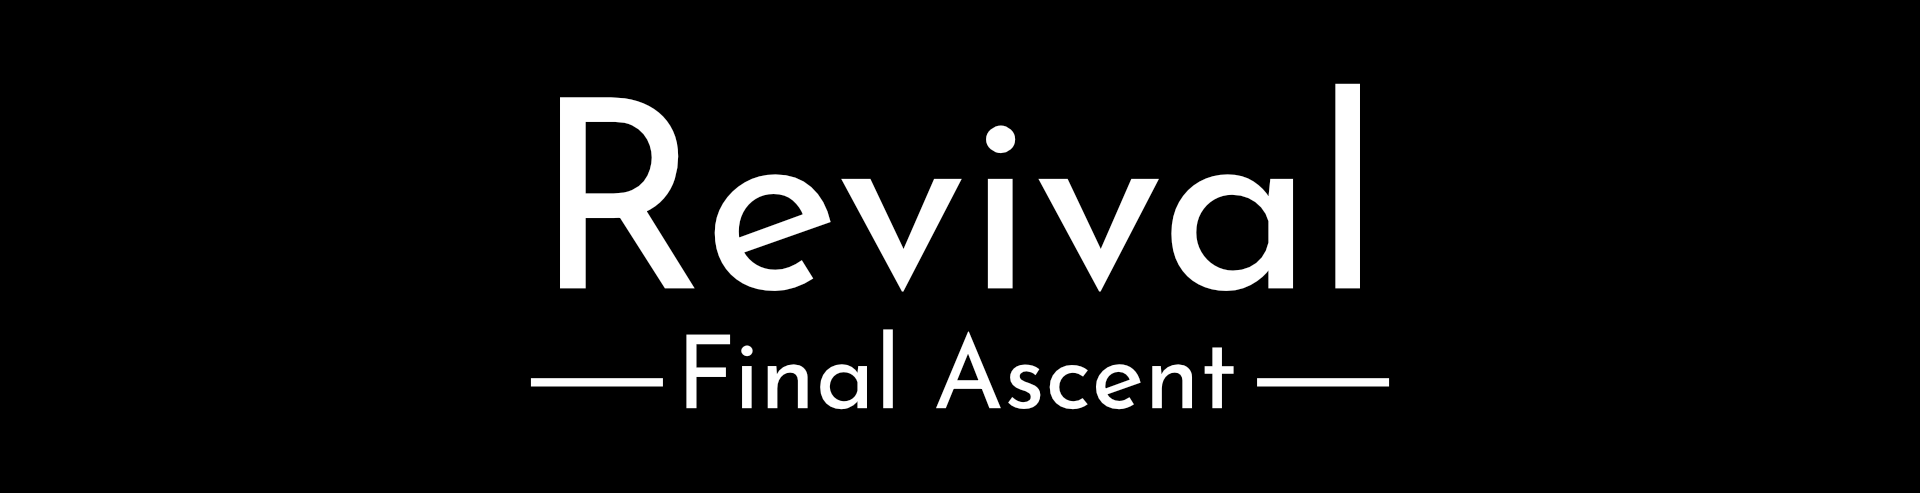 Revival: Final Ascent